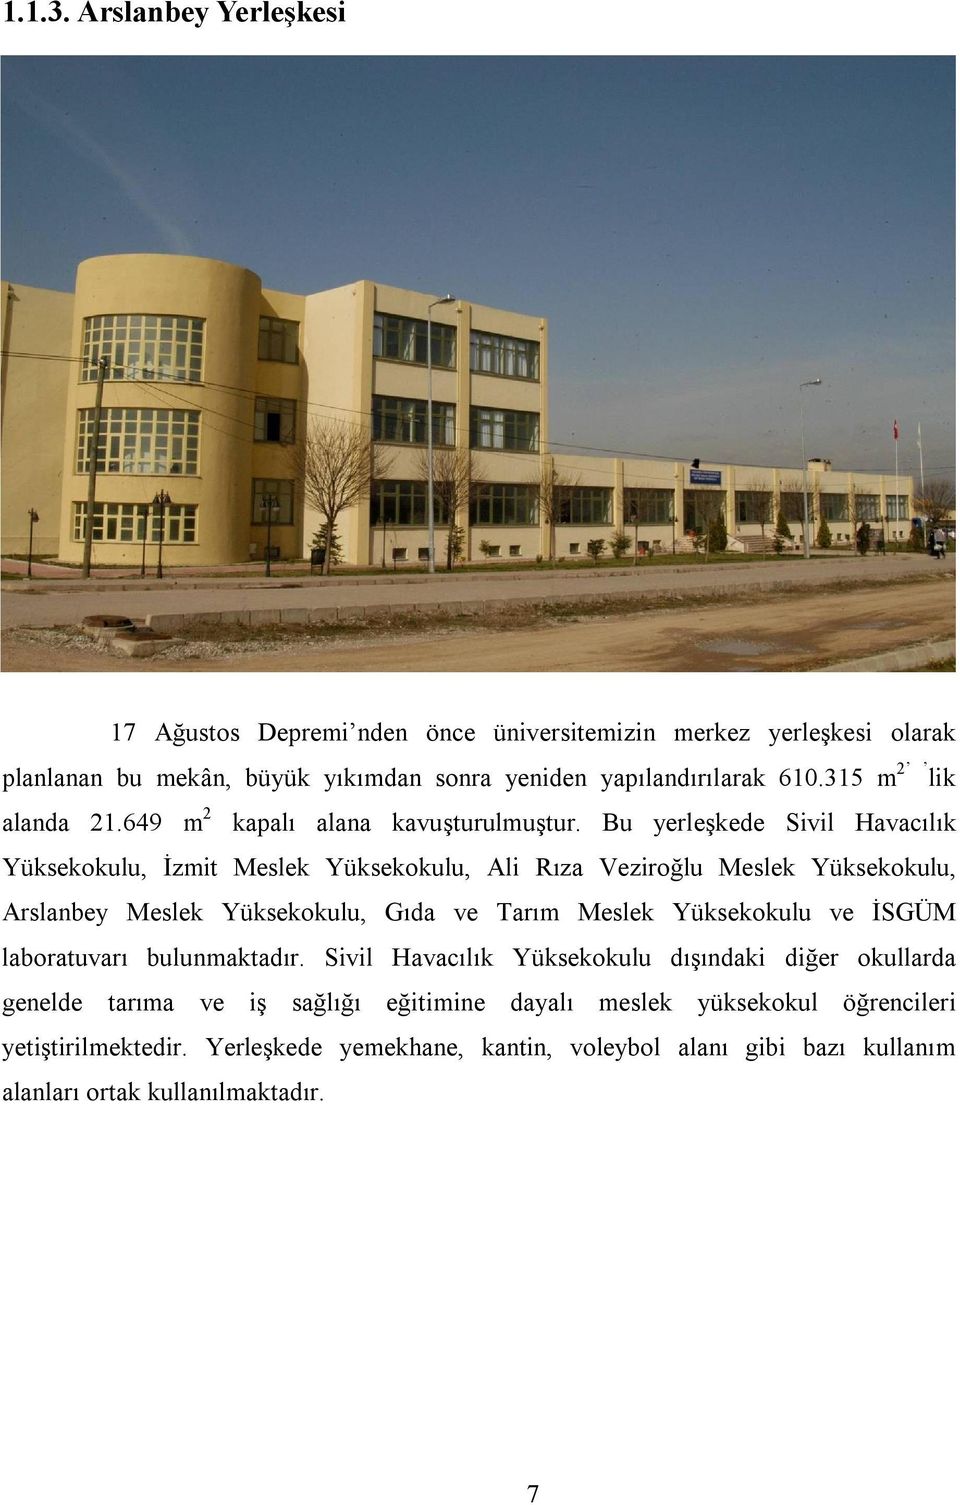 Bu yerleşkede Sivil Havacılık Yüksekokulu, İzmit Meslek Yüksekokulu, Ali Rıza Veziroğlu Meslek Yüksekokulu, Arslanbey Meslek Yüksekokulu, Gıda ve Tarım Meslek Yüksekokulu